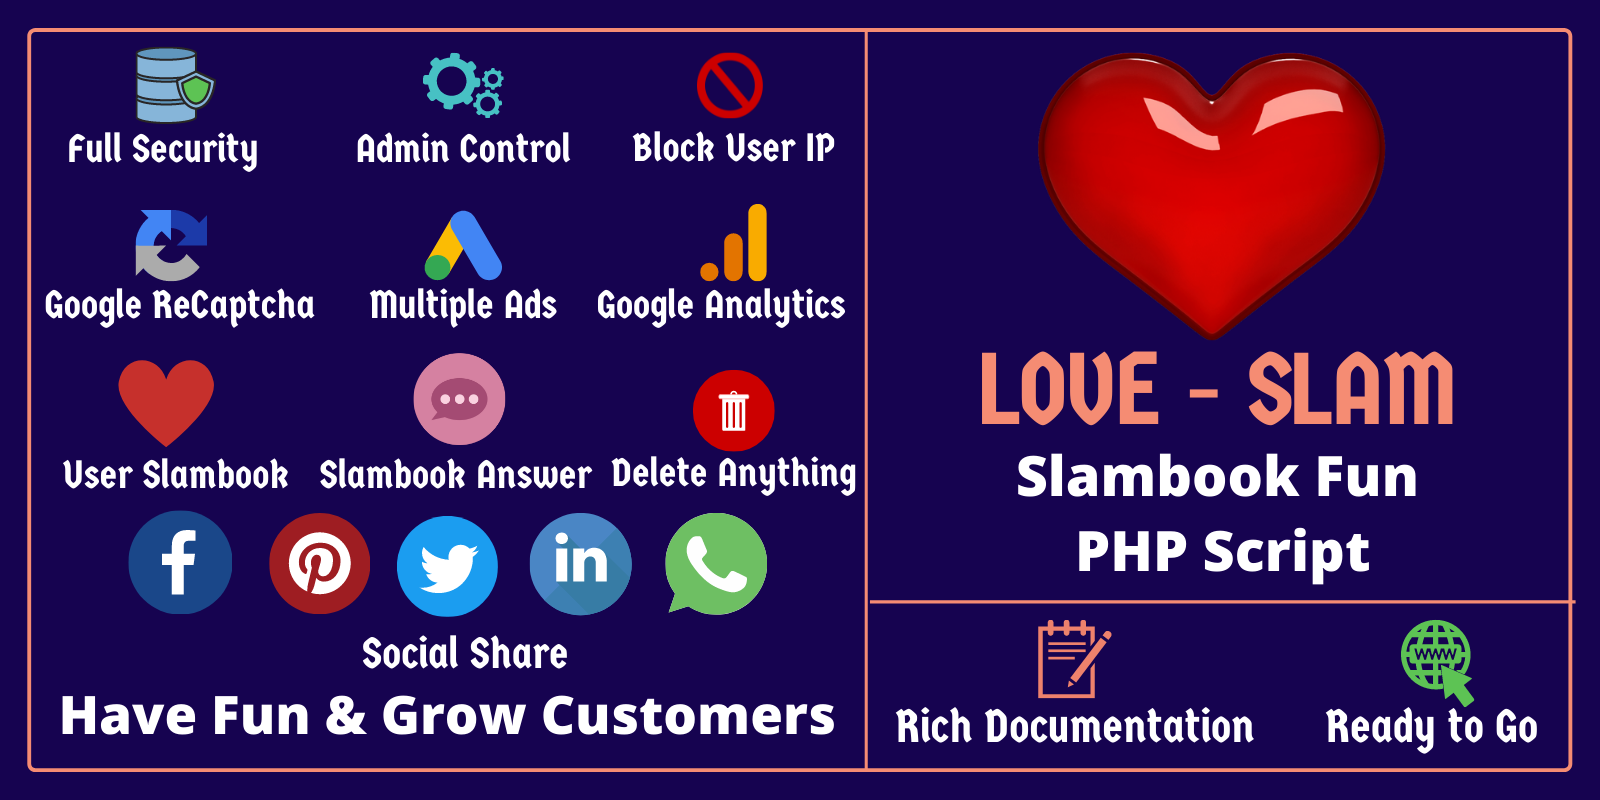 LoveSlam - Slambook Fun PHP Script